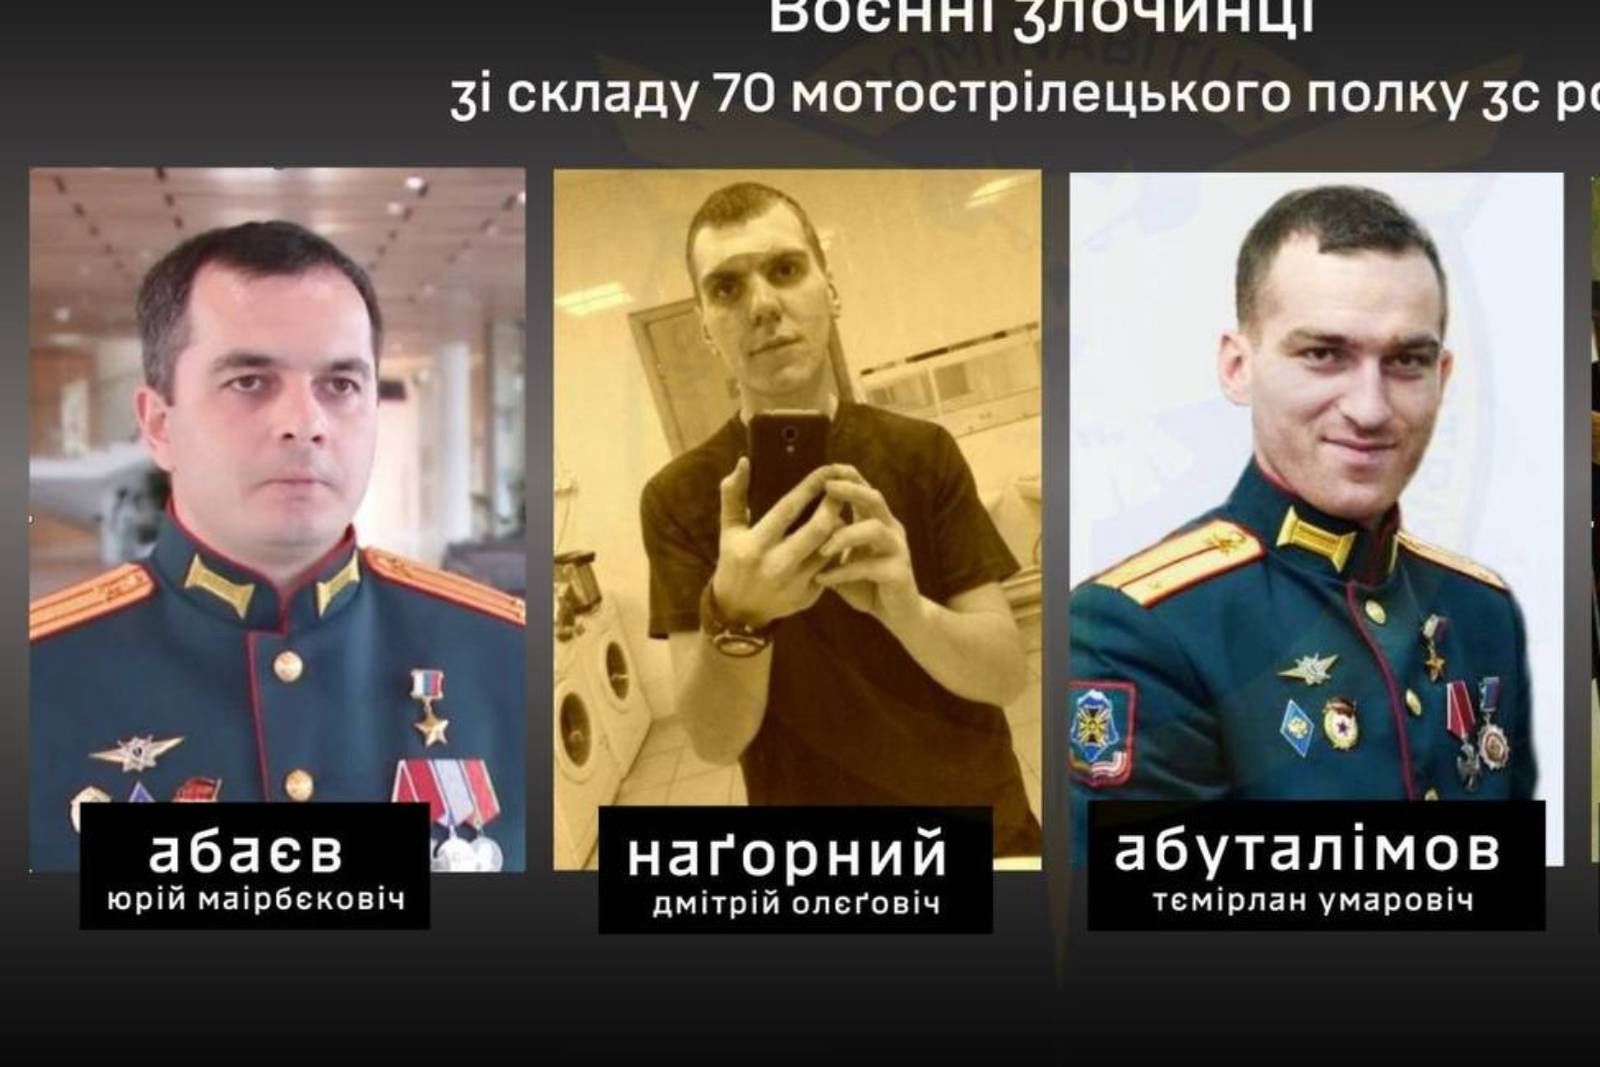 Ukraiński wywiad pokazał twarze zbrodniarzy. To oni zamordowali jeńców